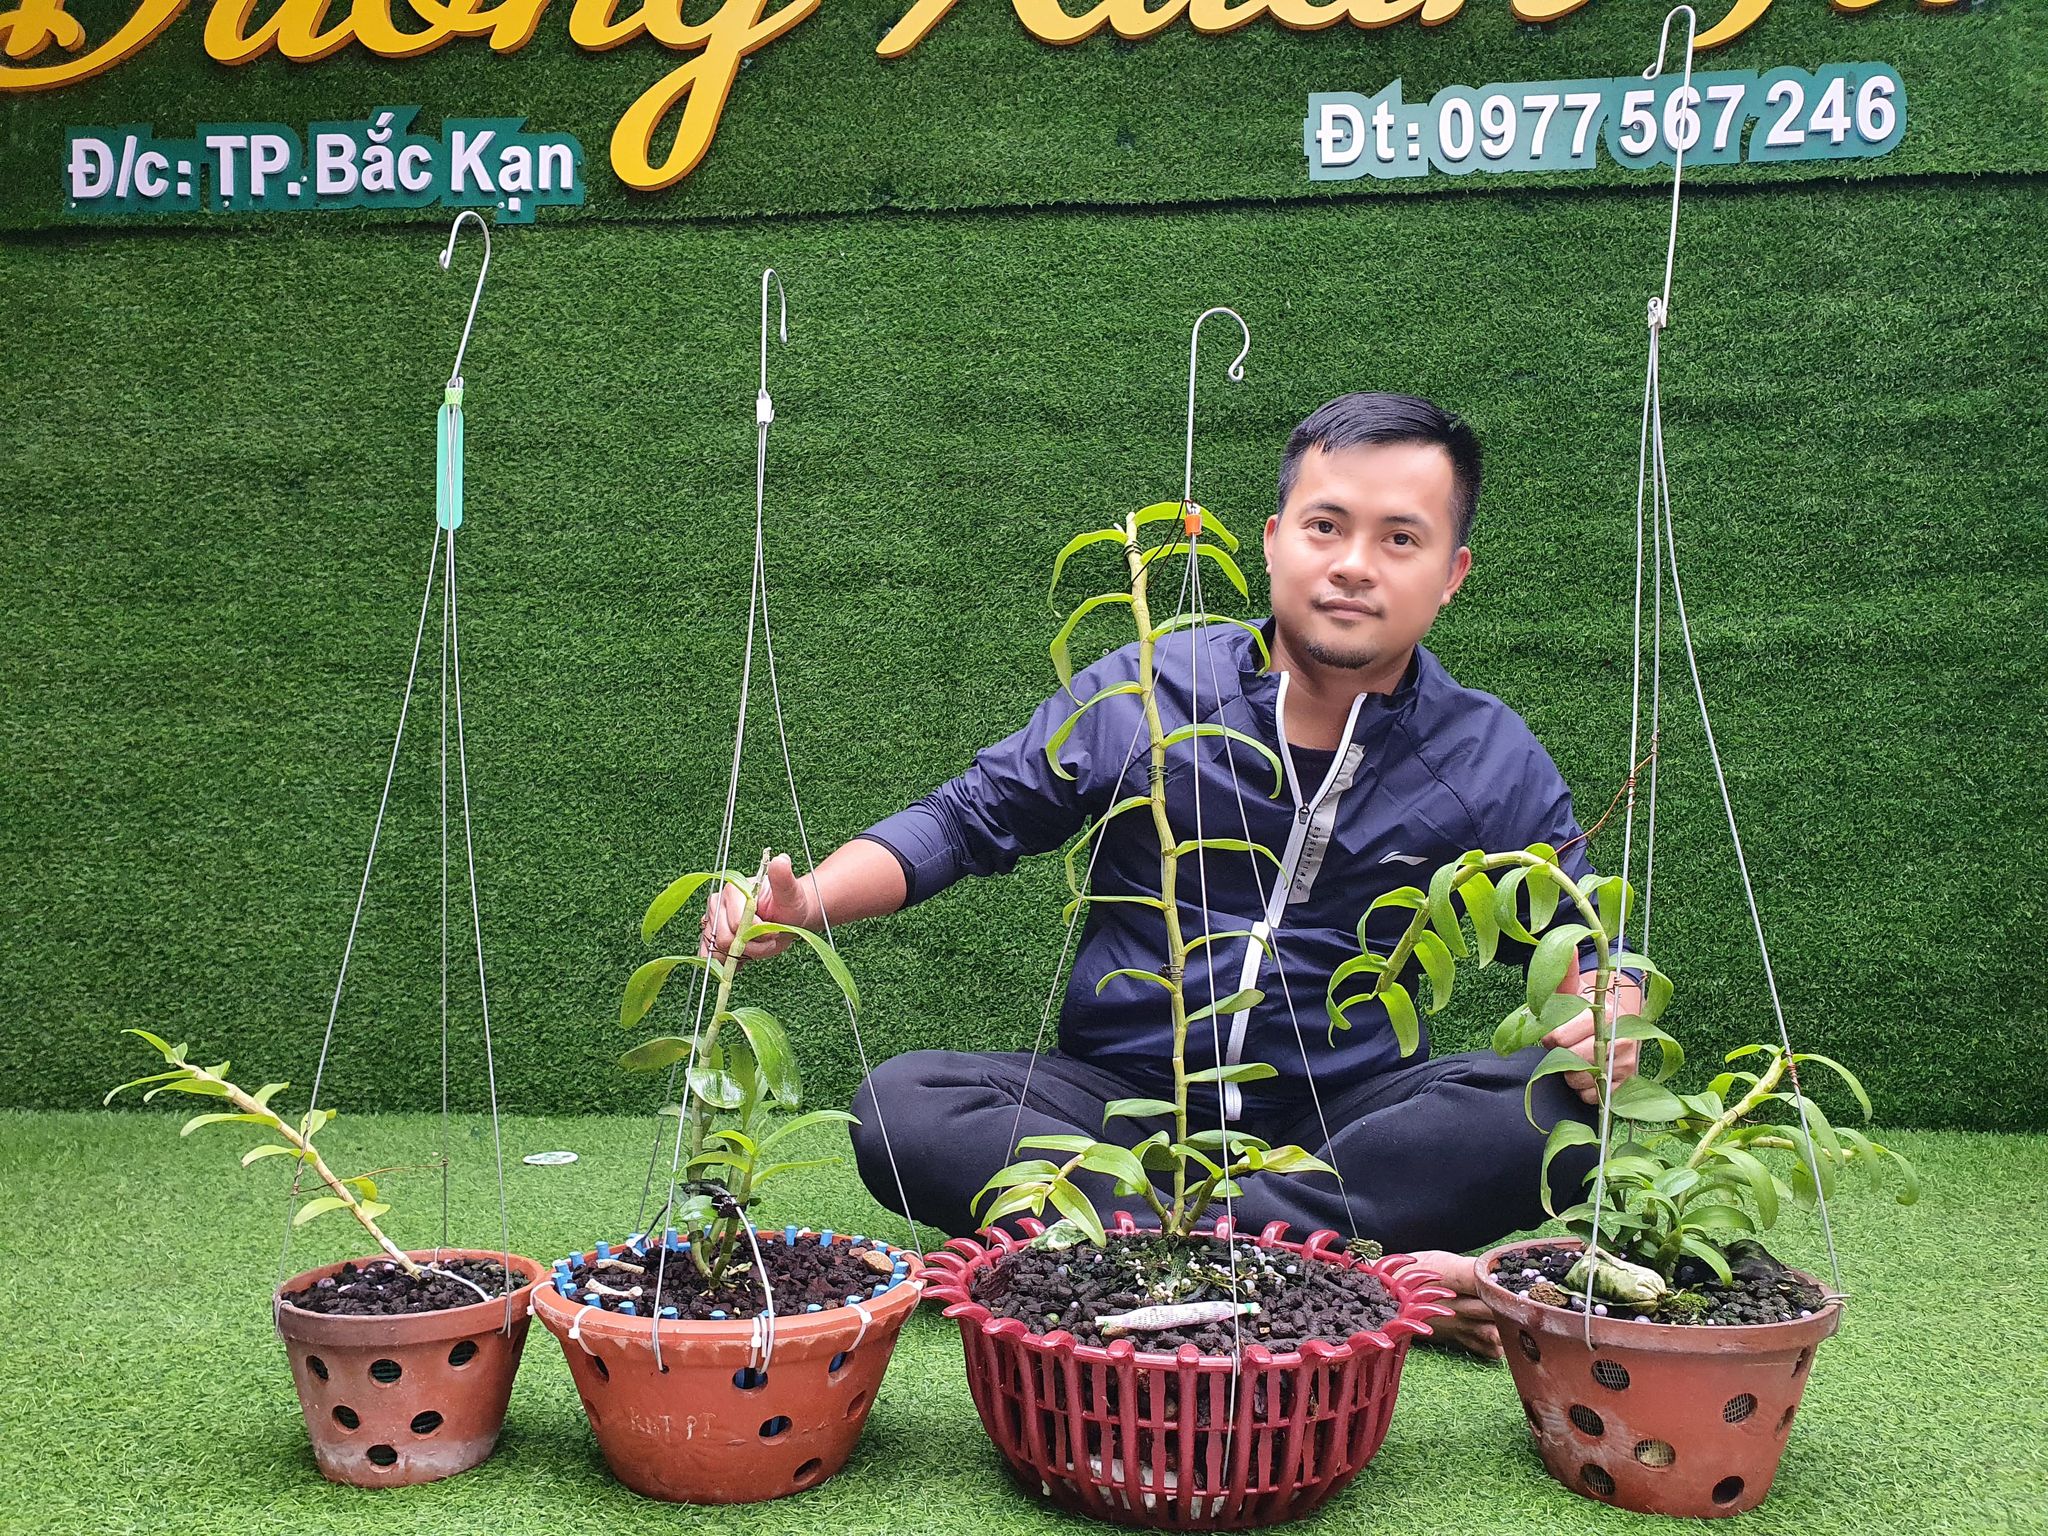 Ông chủ vườn lan Dương Xuân Tú – Người bỏ việc ngành Y để trồng lan - ảnh 3